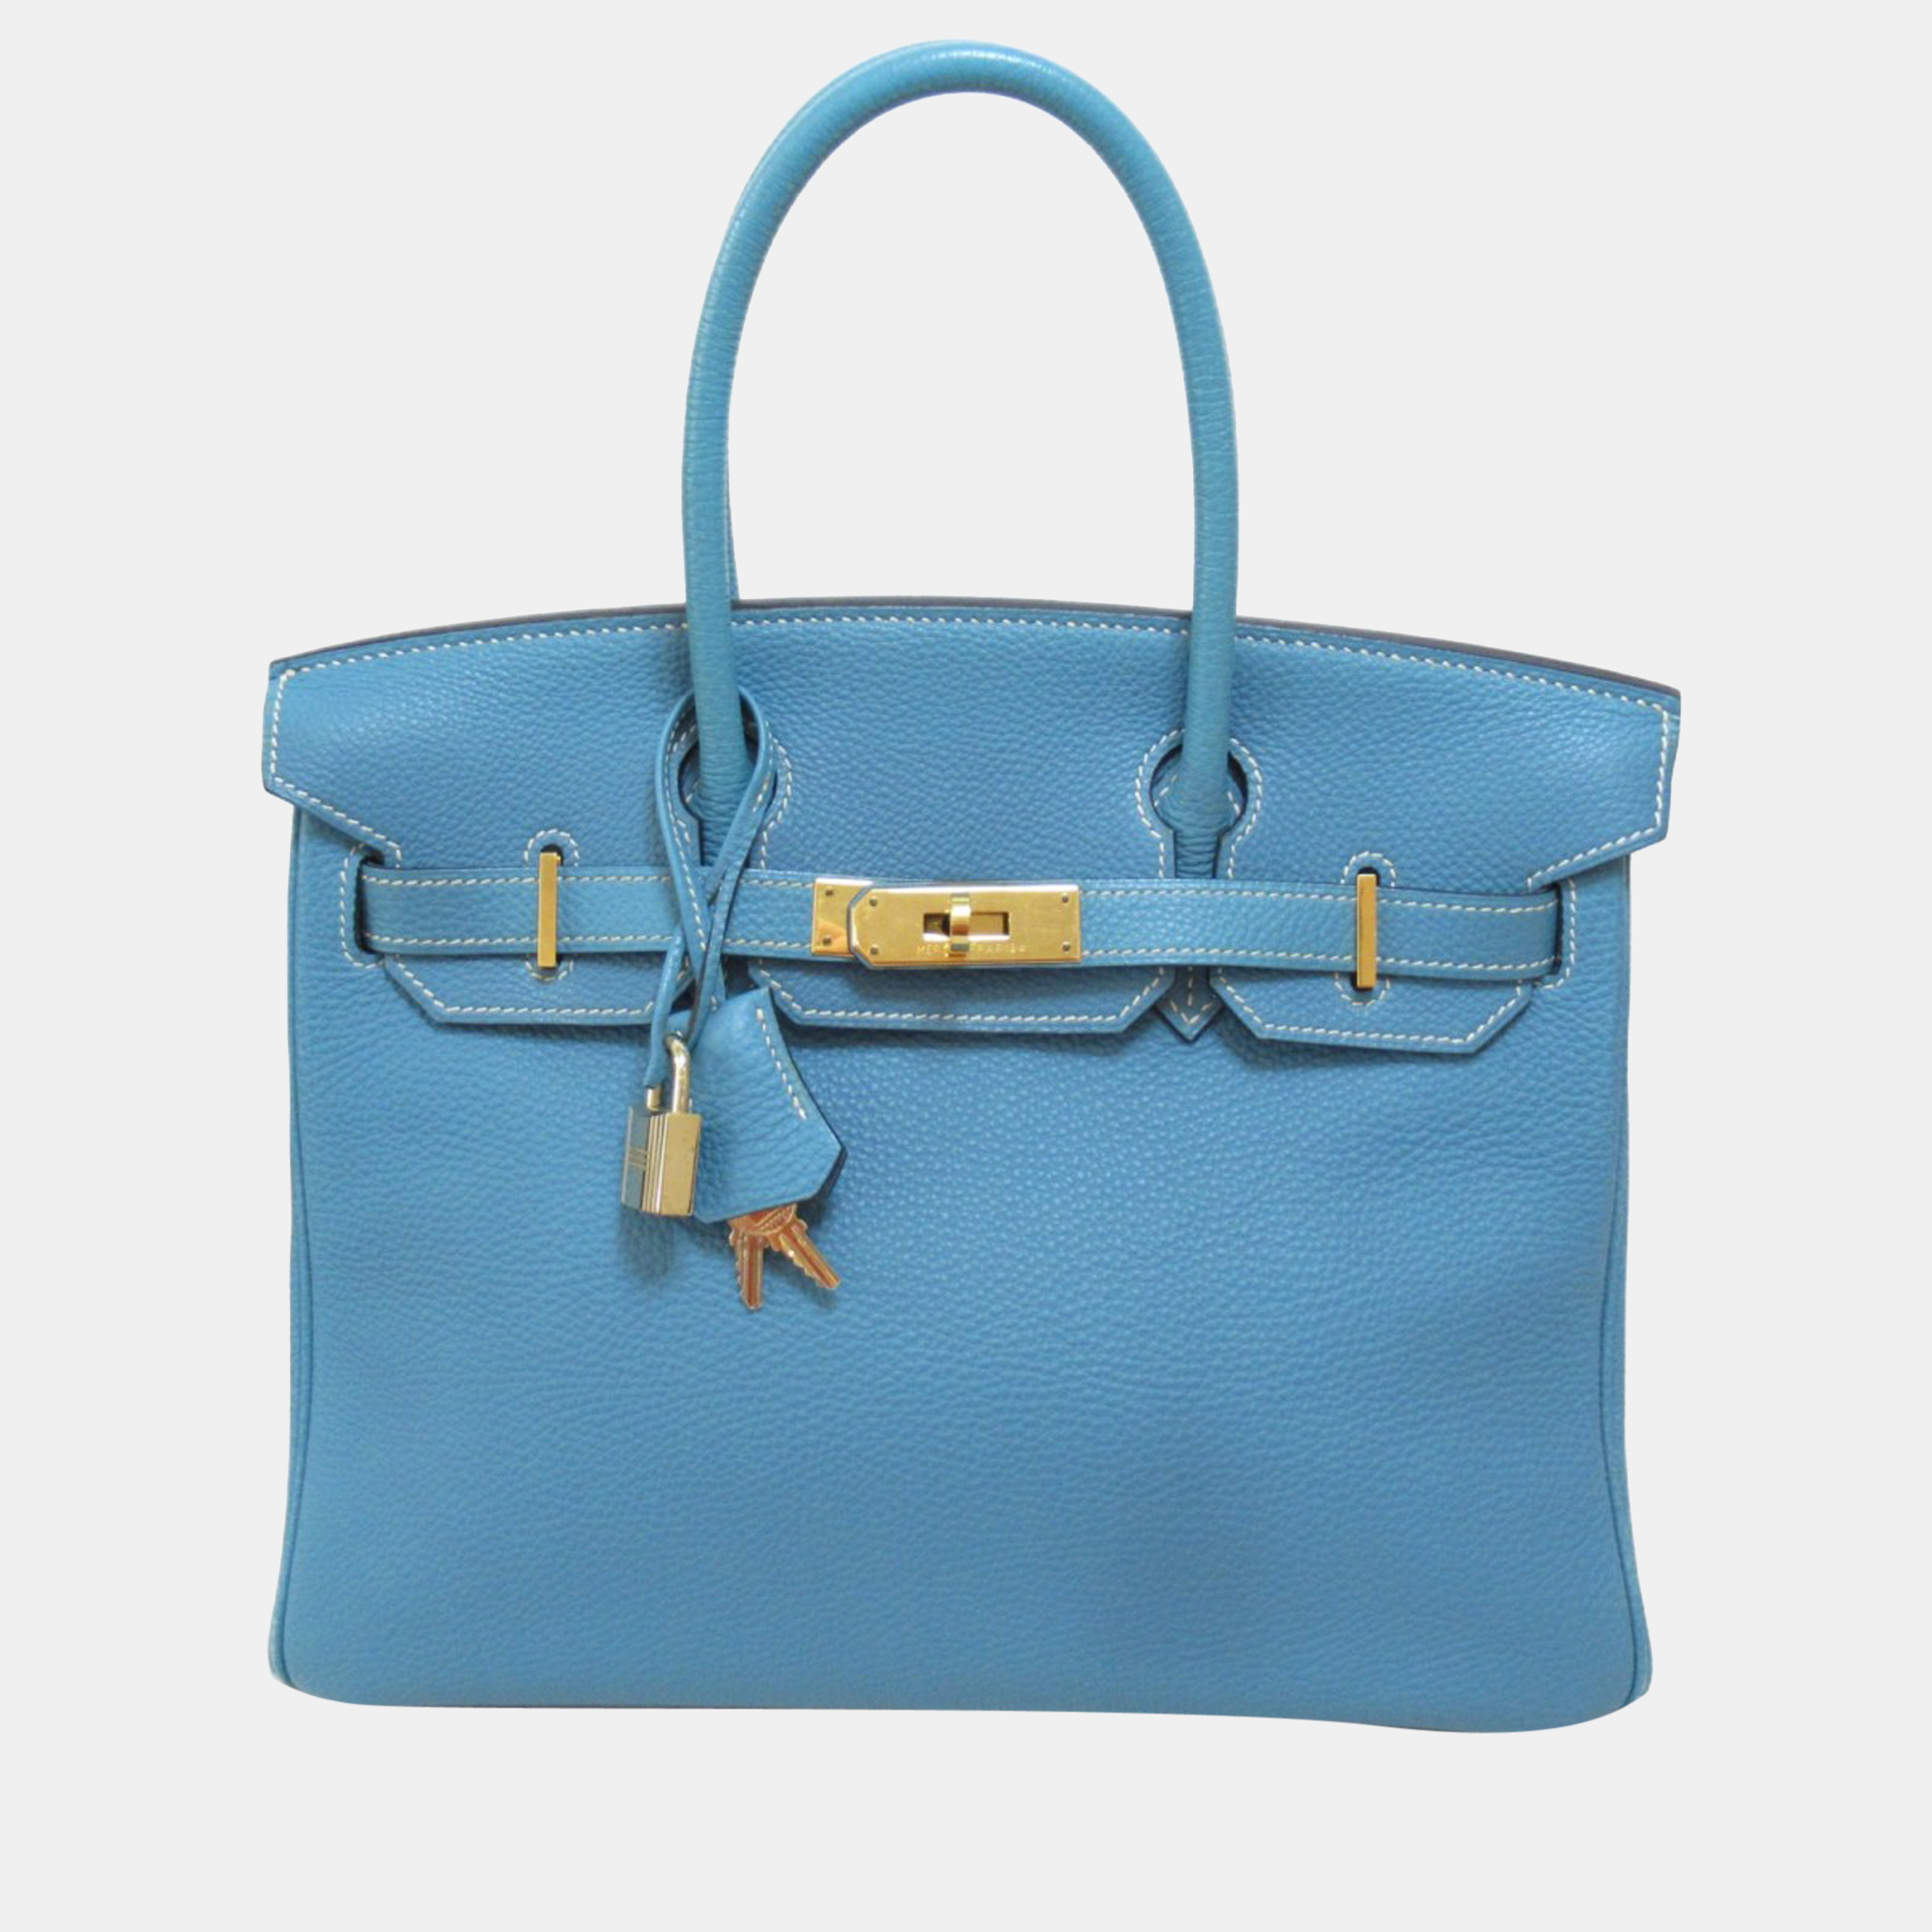 Hermes Blue Togo Leather Gold Hardware Birkin 30 Bag